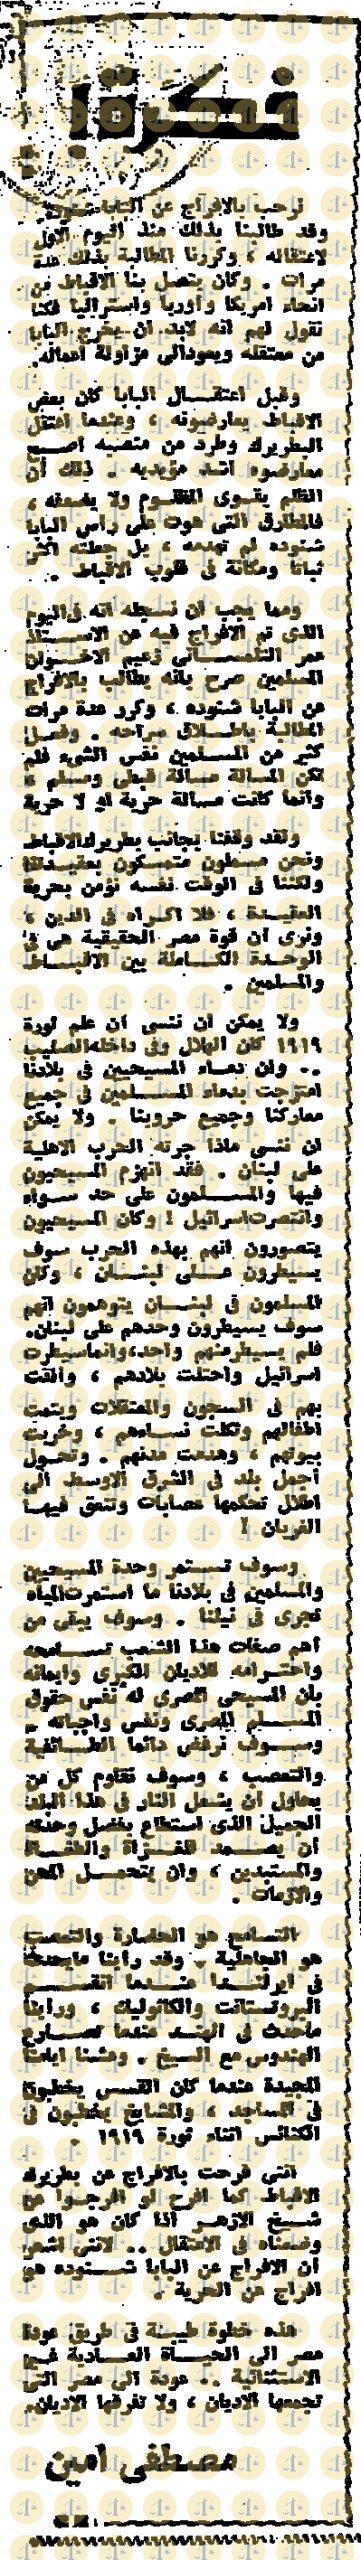 يوم 4 يناير 1985م، الأخبار، مقال مصطفى أمين، ص12